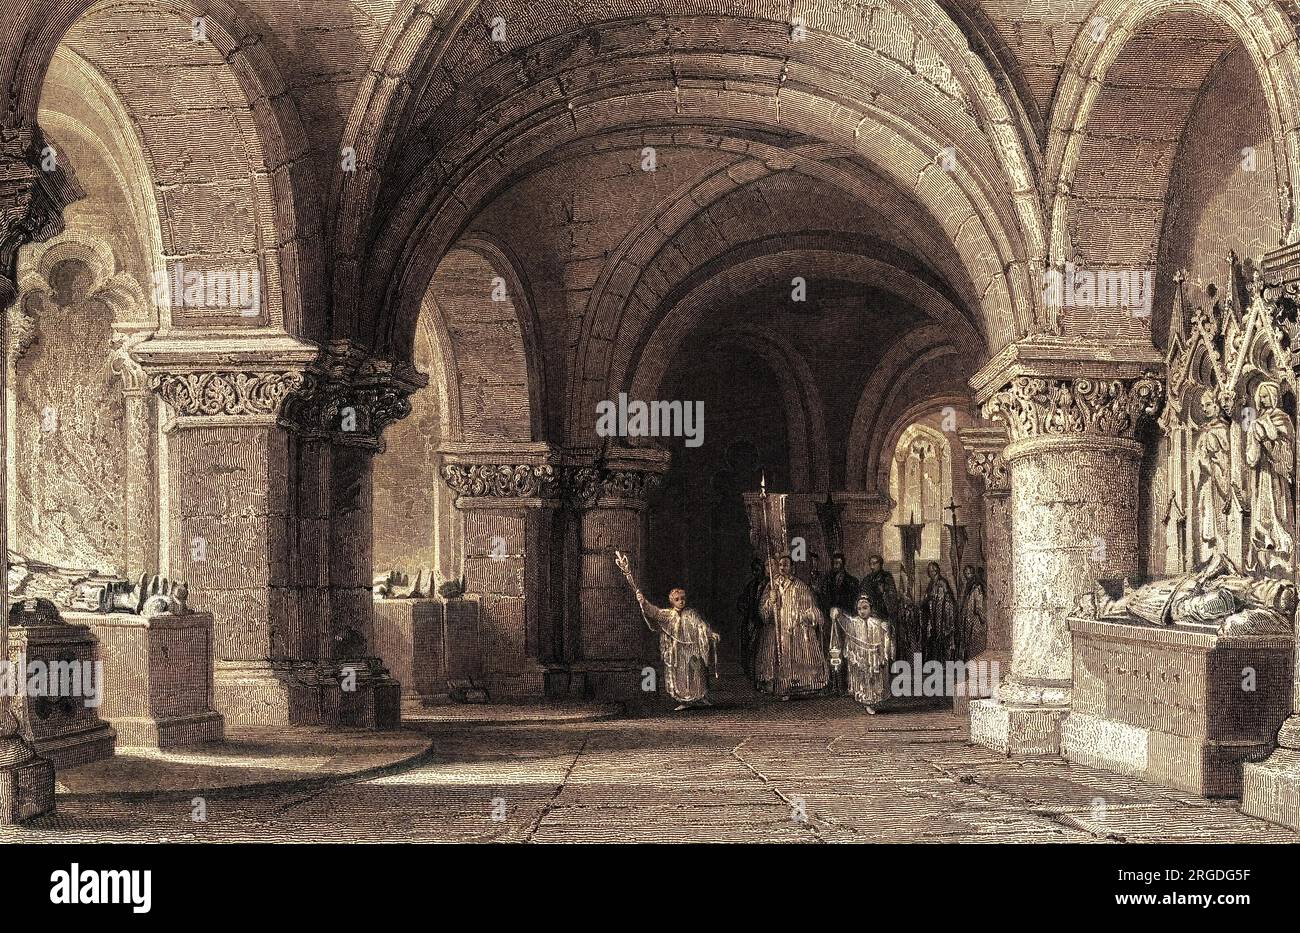 Abbey of saint denis immagini e fotografie stock ad alta risoluzione - Alamy